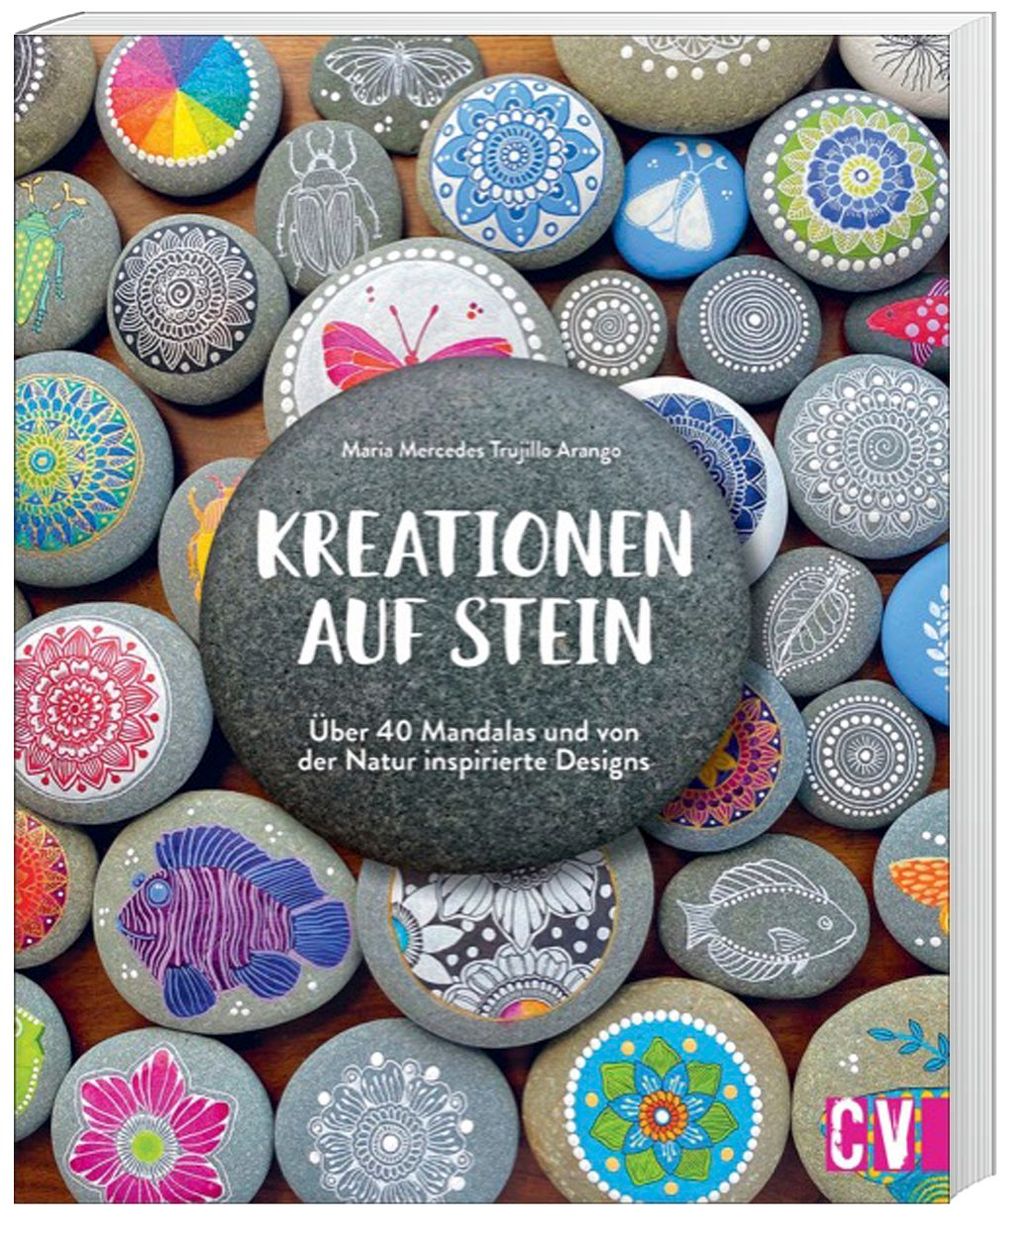 Kreationen auf Stein Buch versandkostenfrei bei Weltbild.ch bestellen